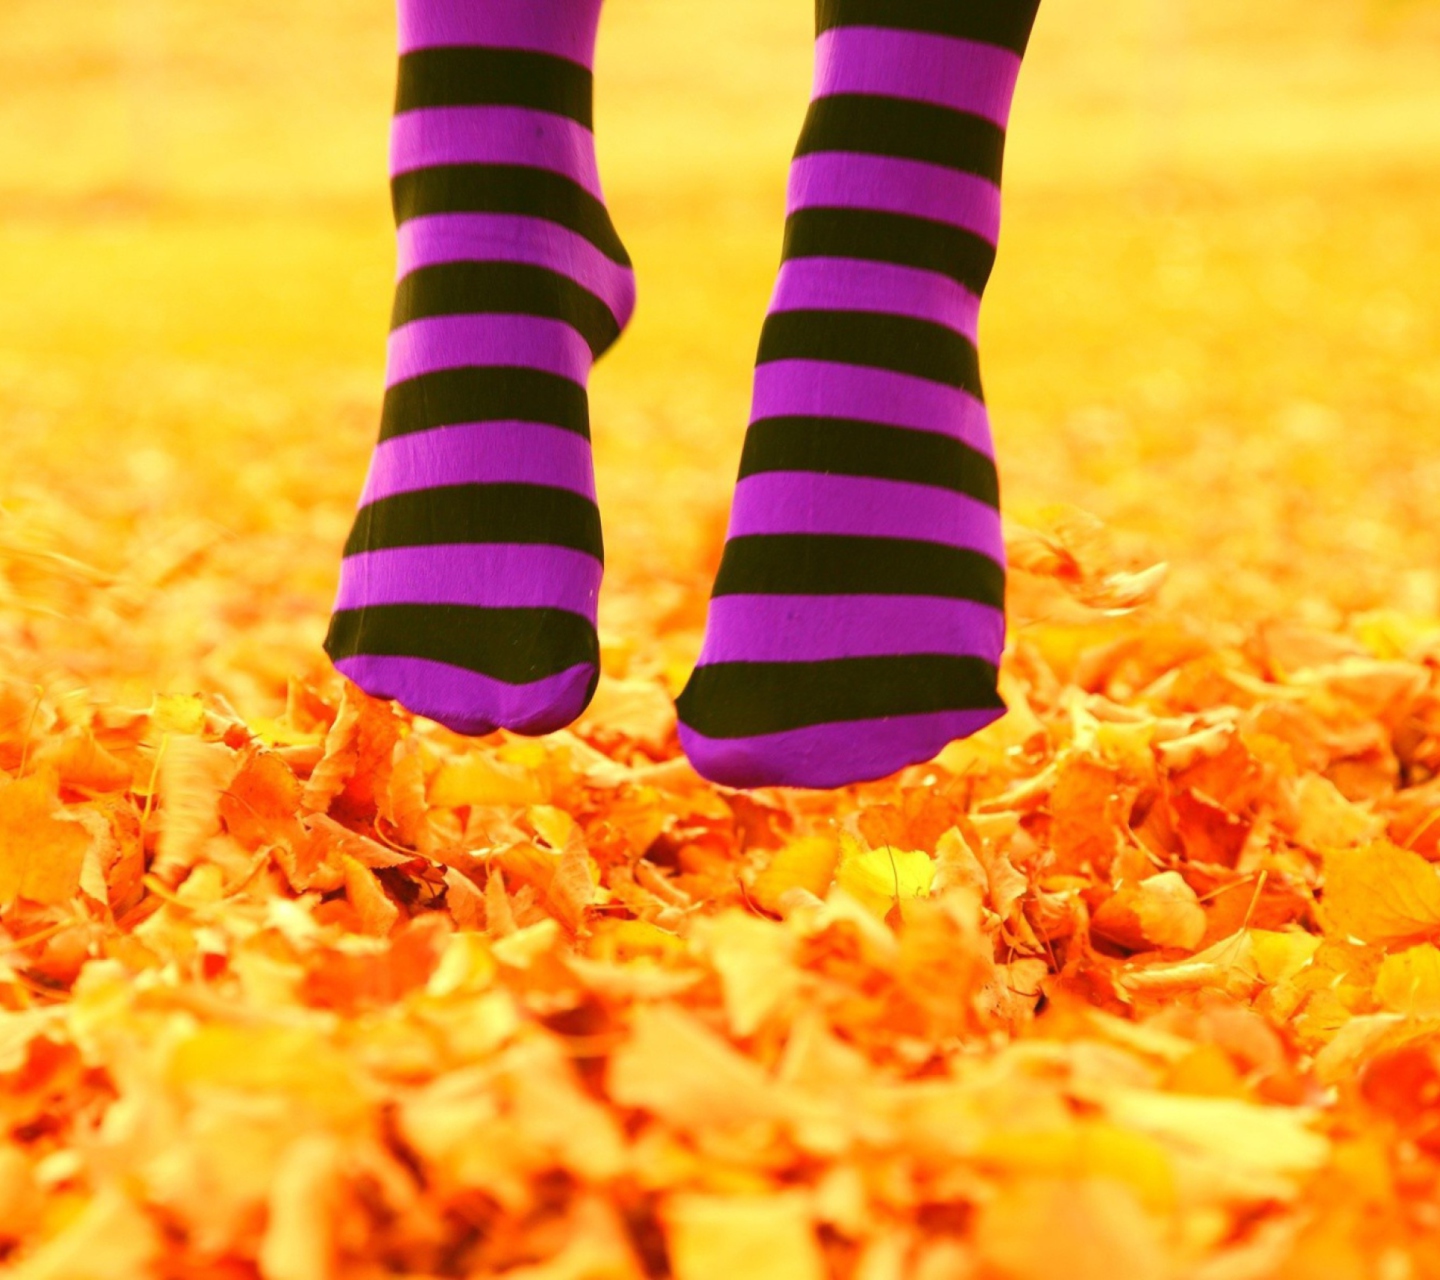 Обои Purple Feet And Yellow Leaves 1440x1280